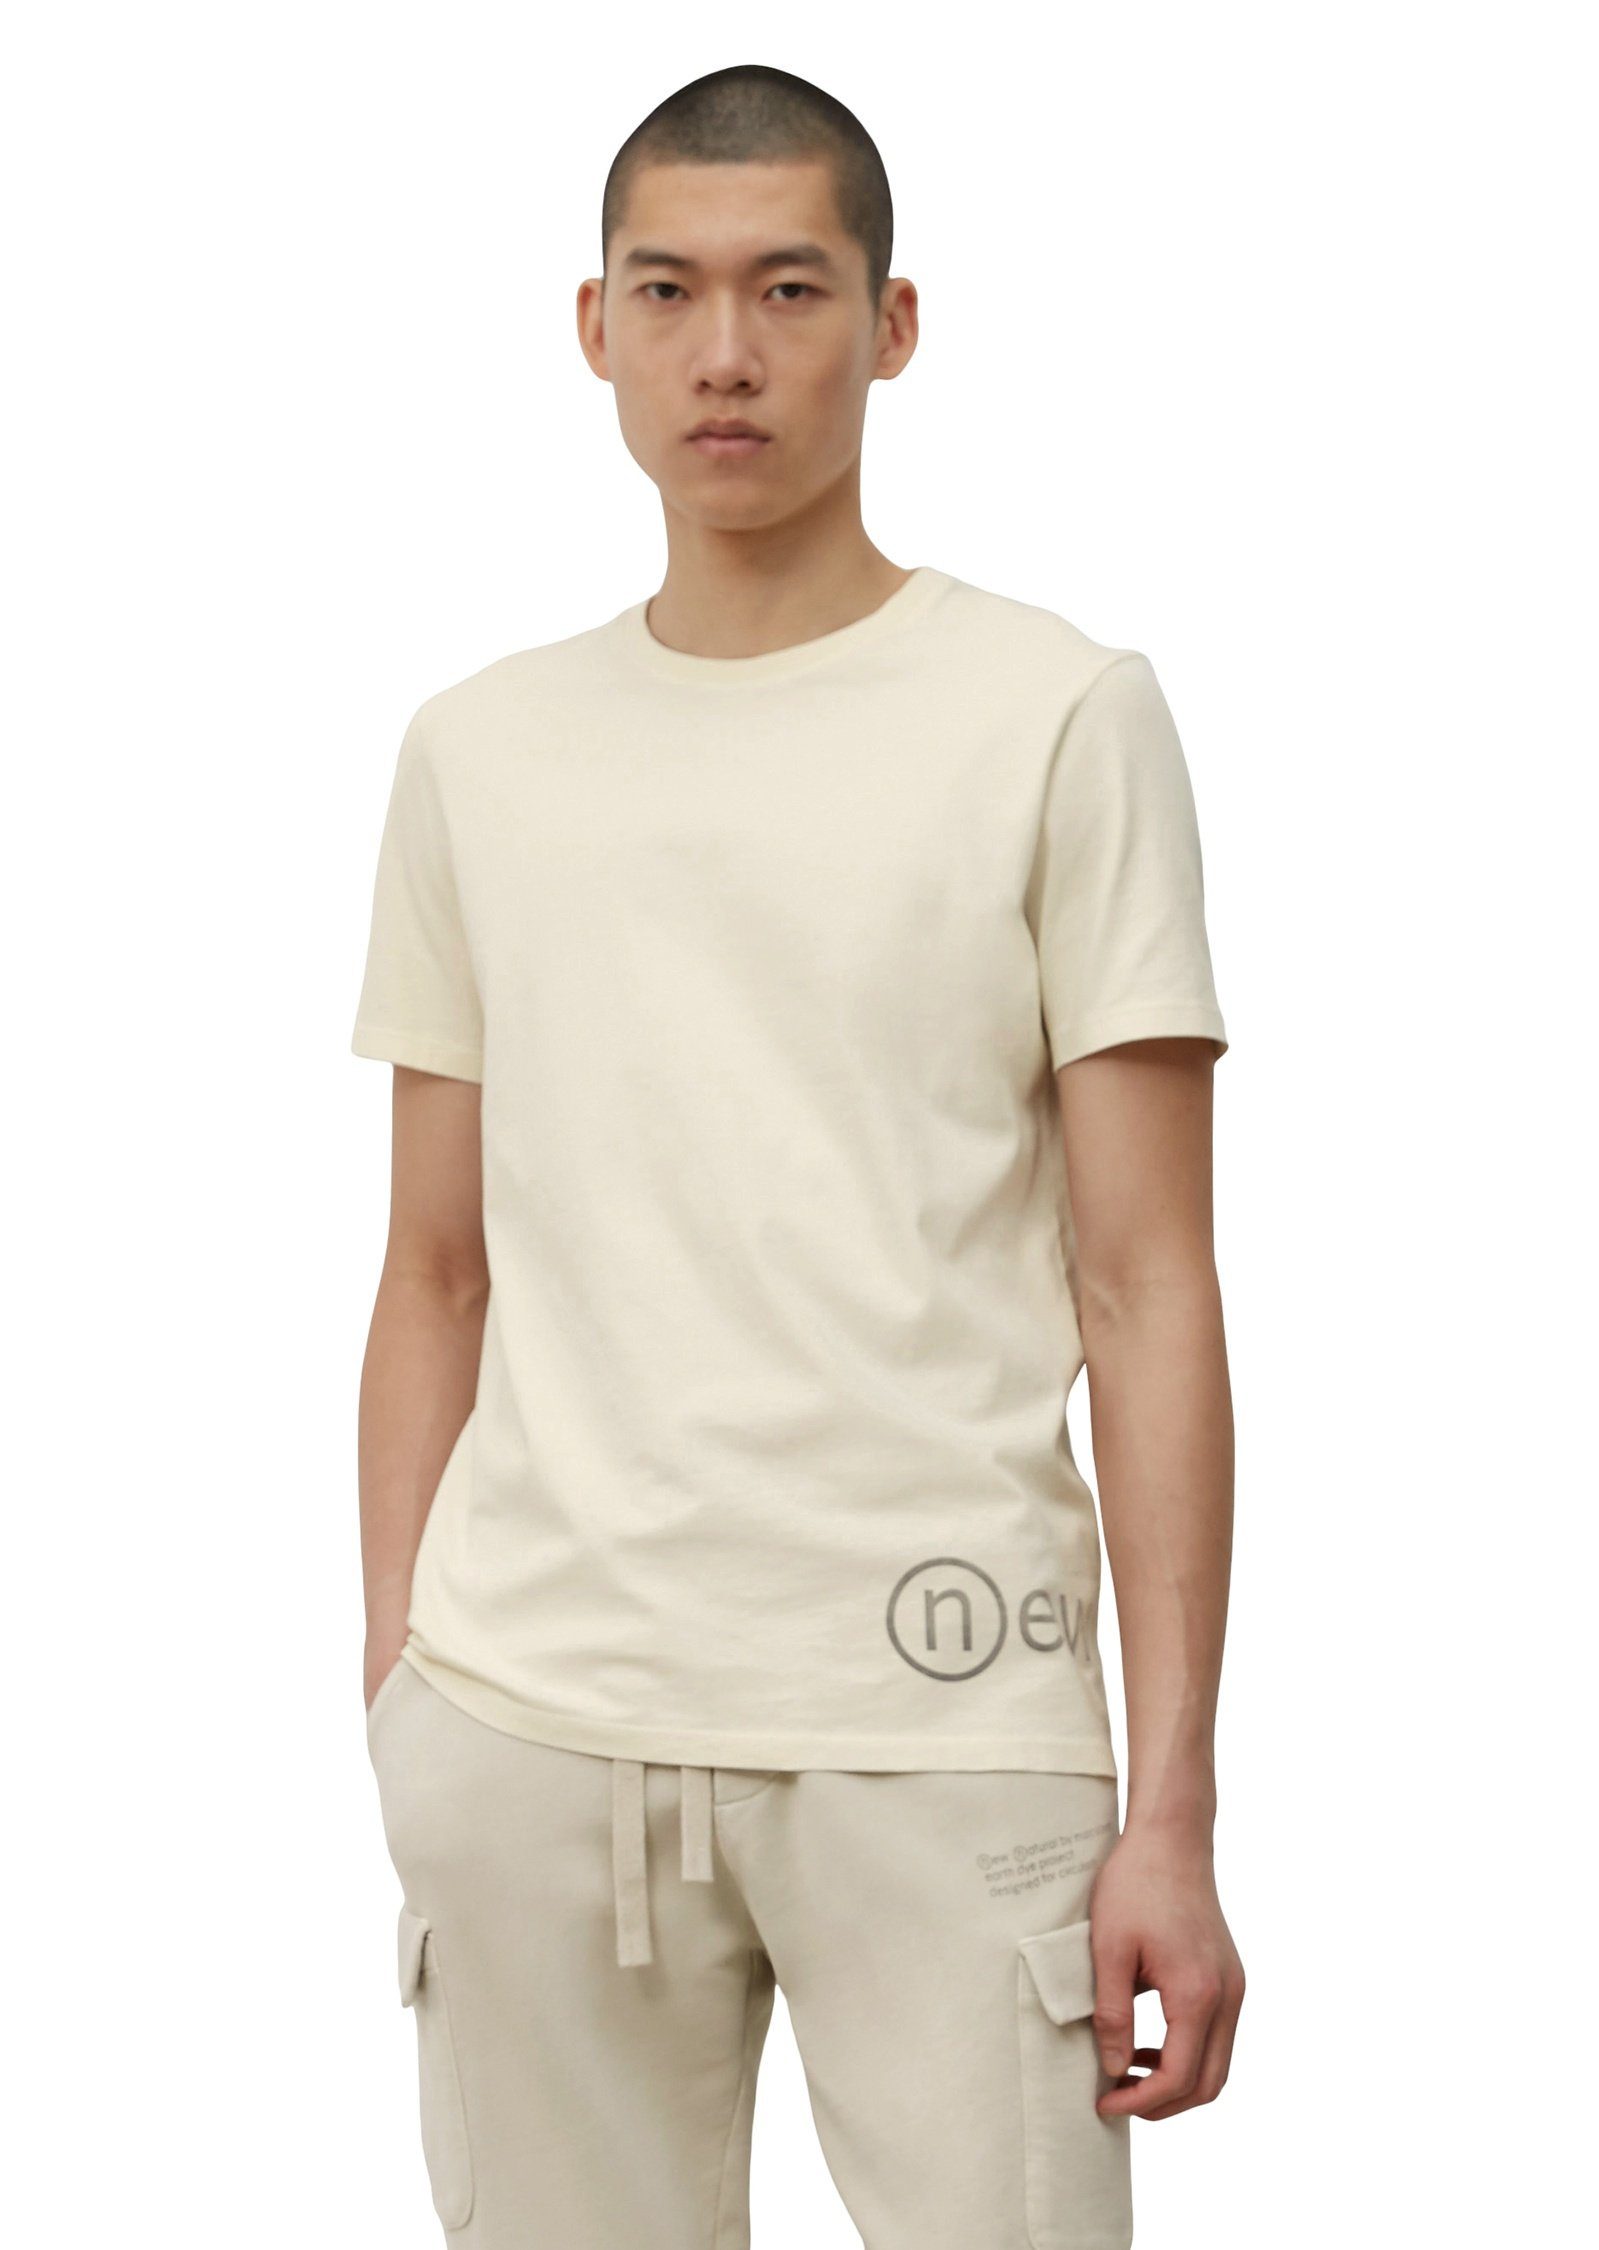 Marc O'Polo T-Shirt mit mineralischen Erdpigmenten gefärbt weiß